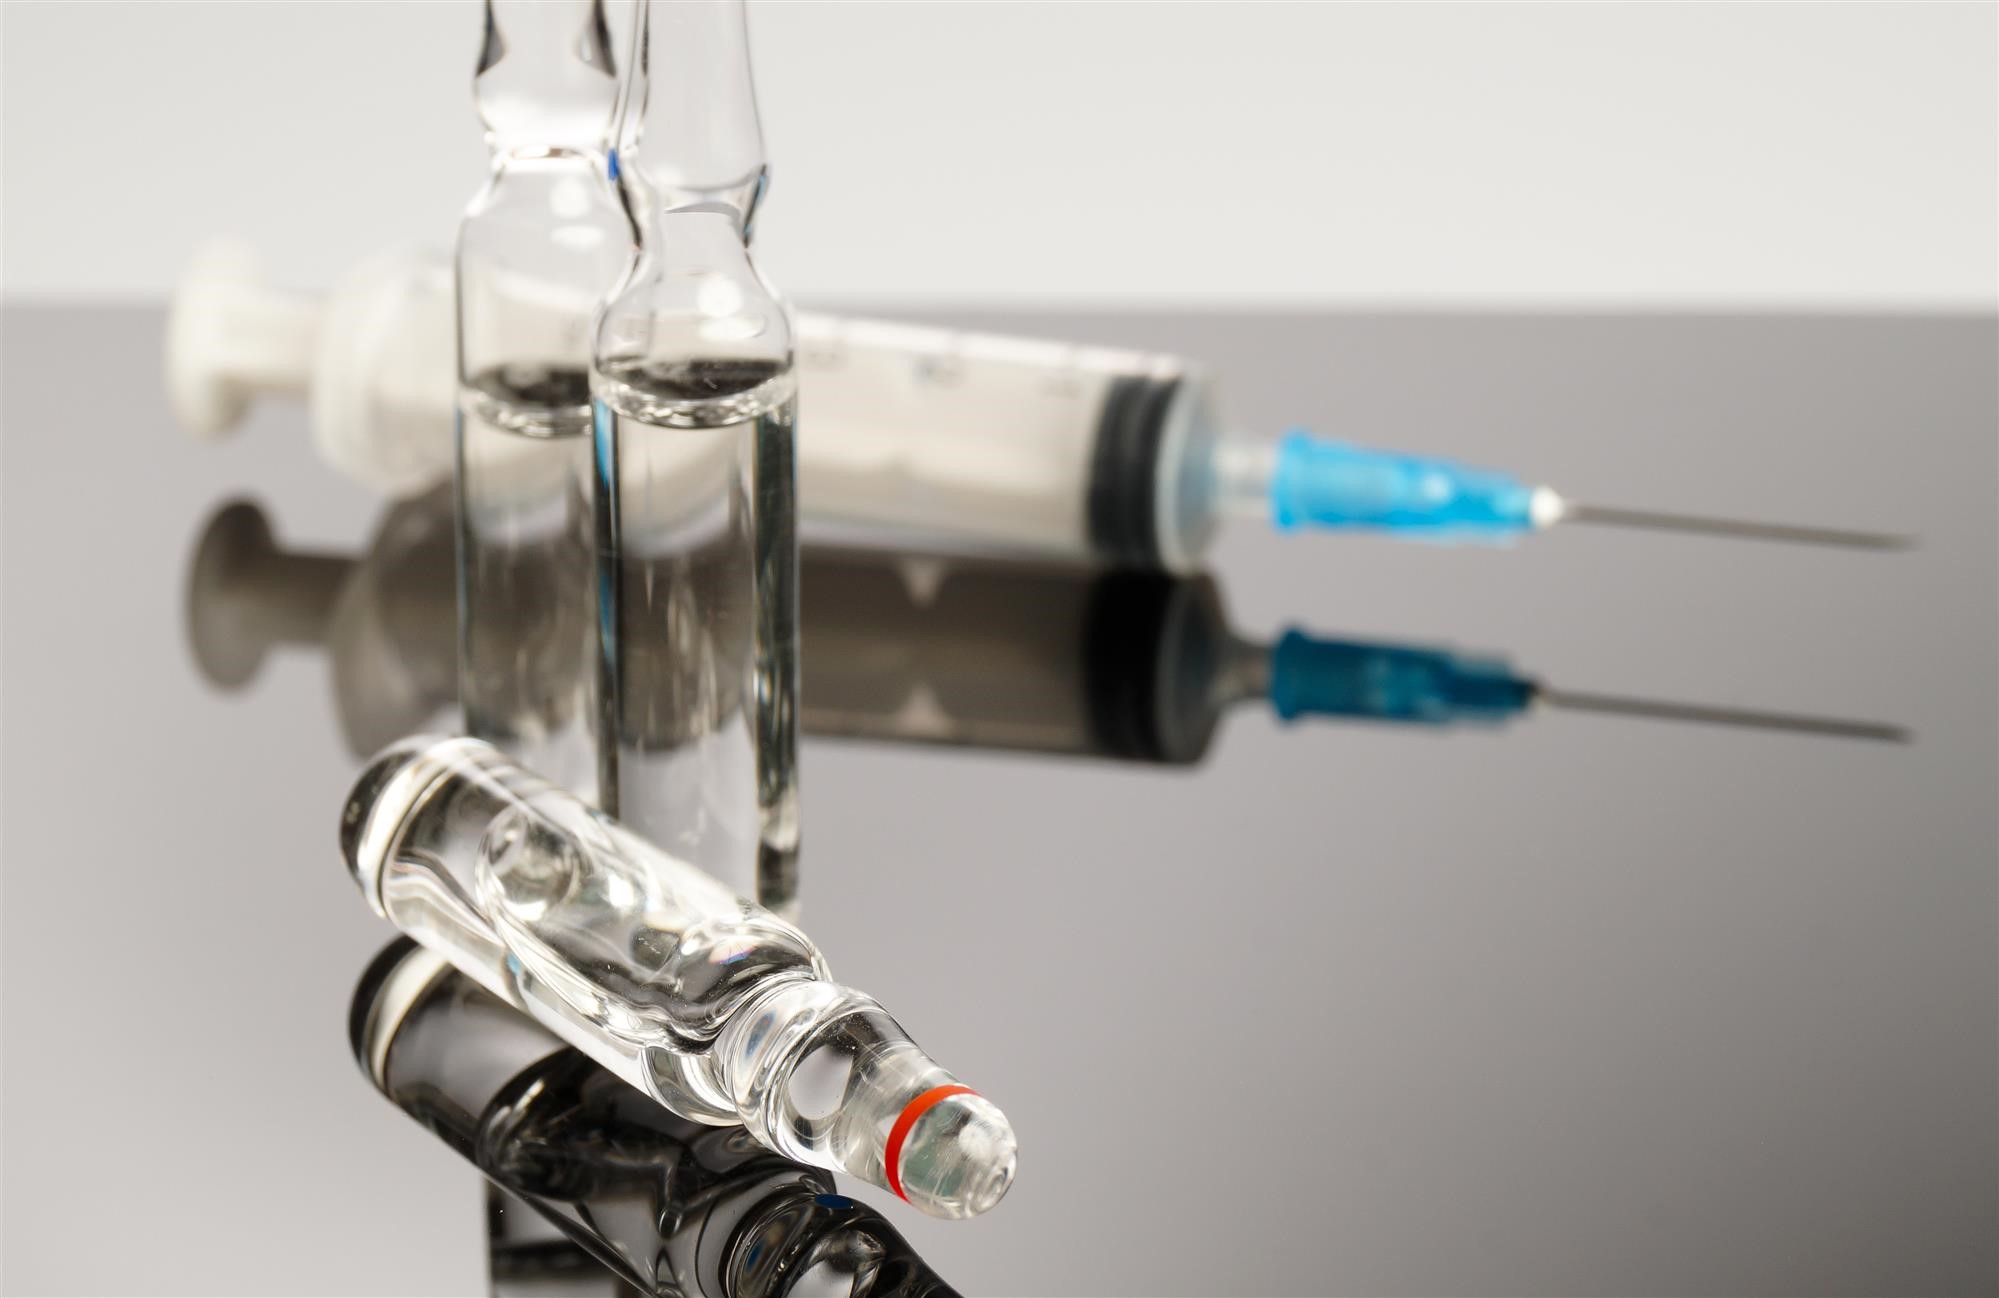 Are Vaccine Mandates Ethical?